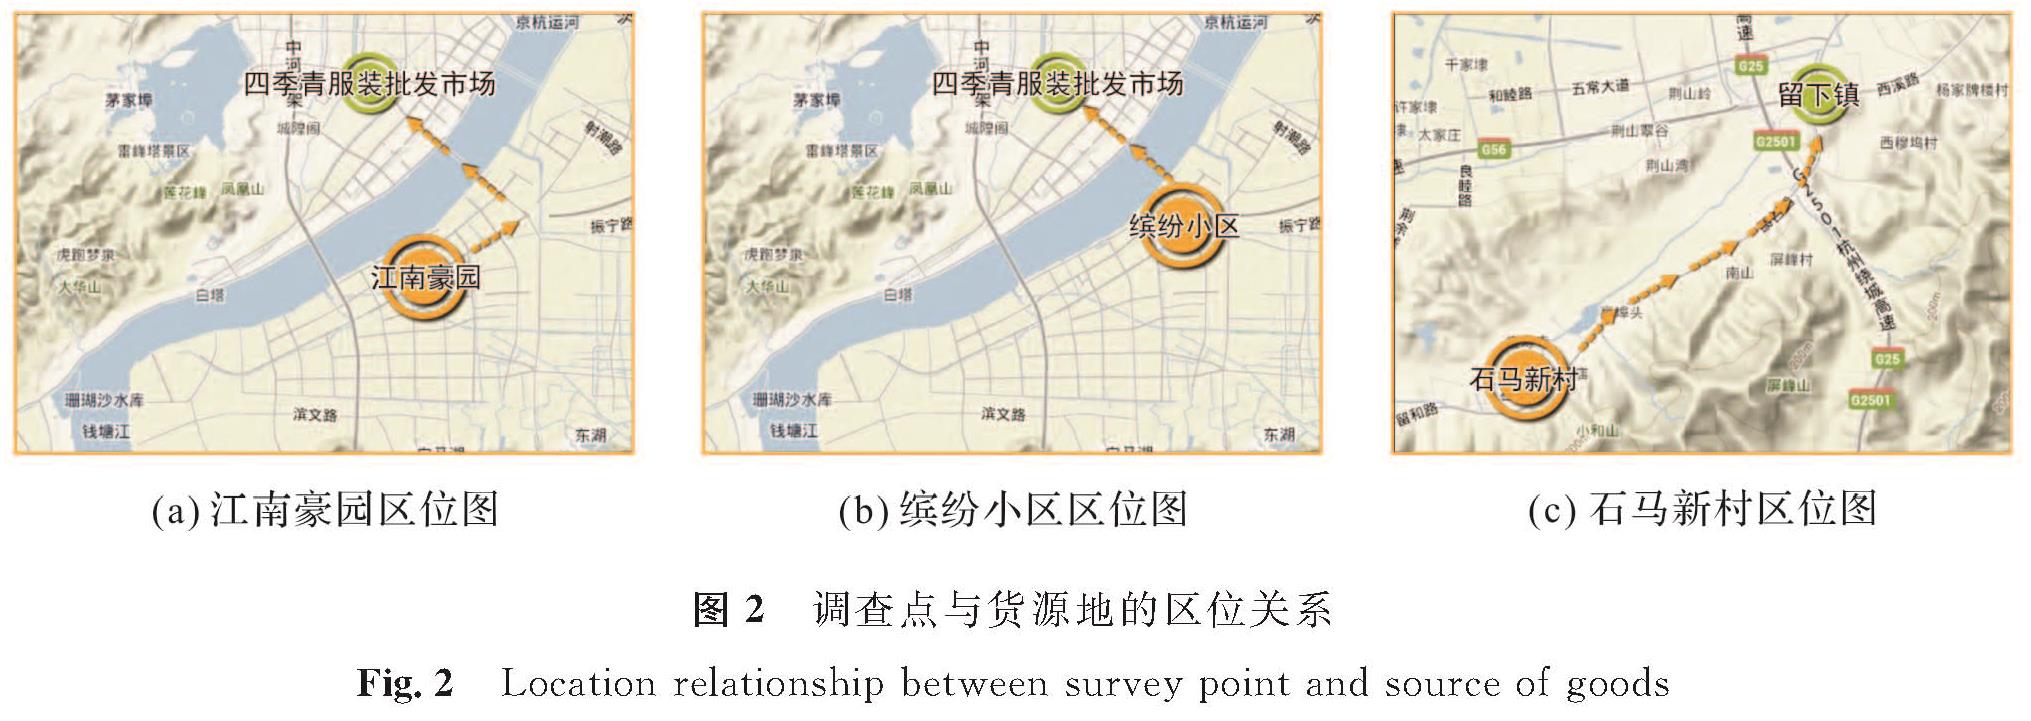 图2 调查点与货源地的区位关系<br/>Fig.2 Location relationship between survey point and source of goods